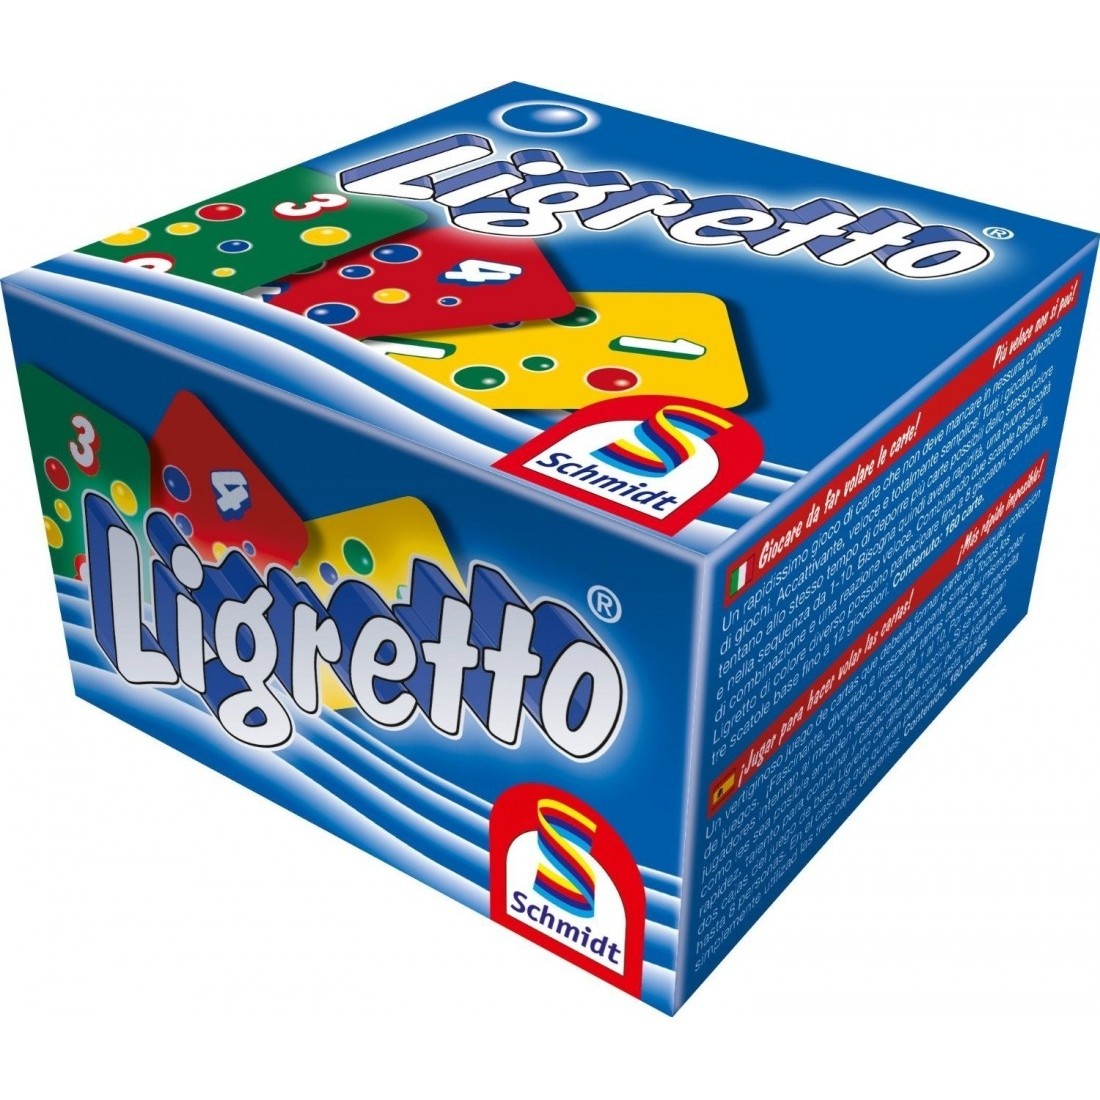 Jeux Ligretto - Le jeu de société (mult) SCHMIDT